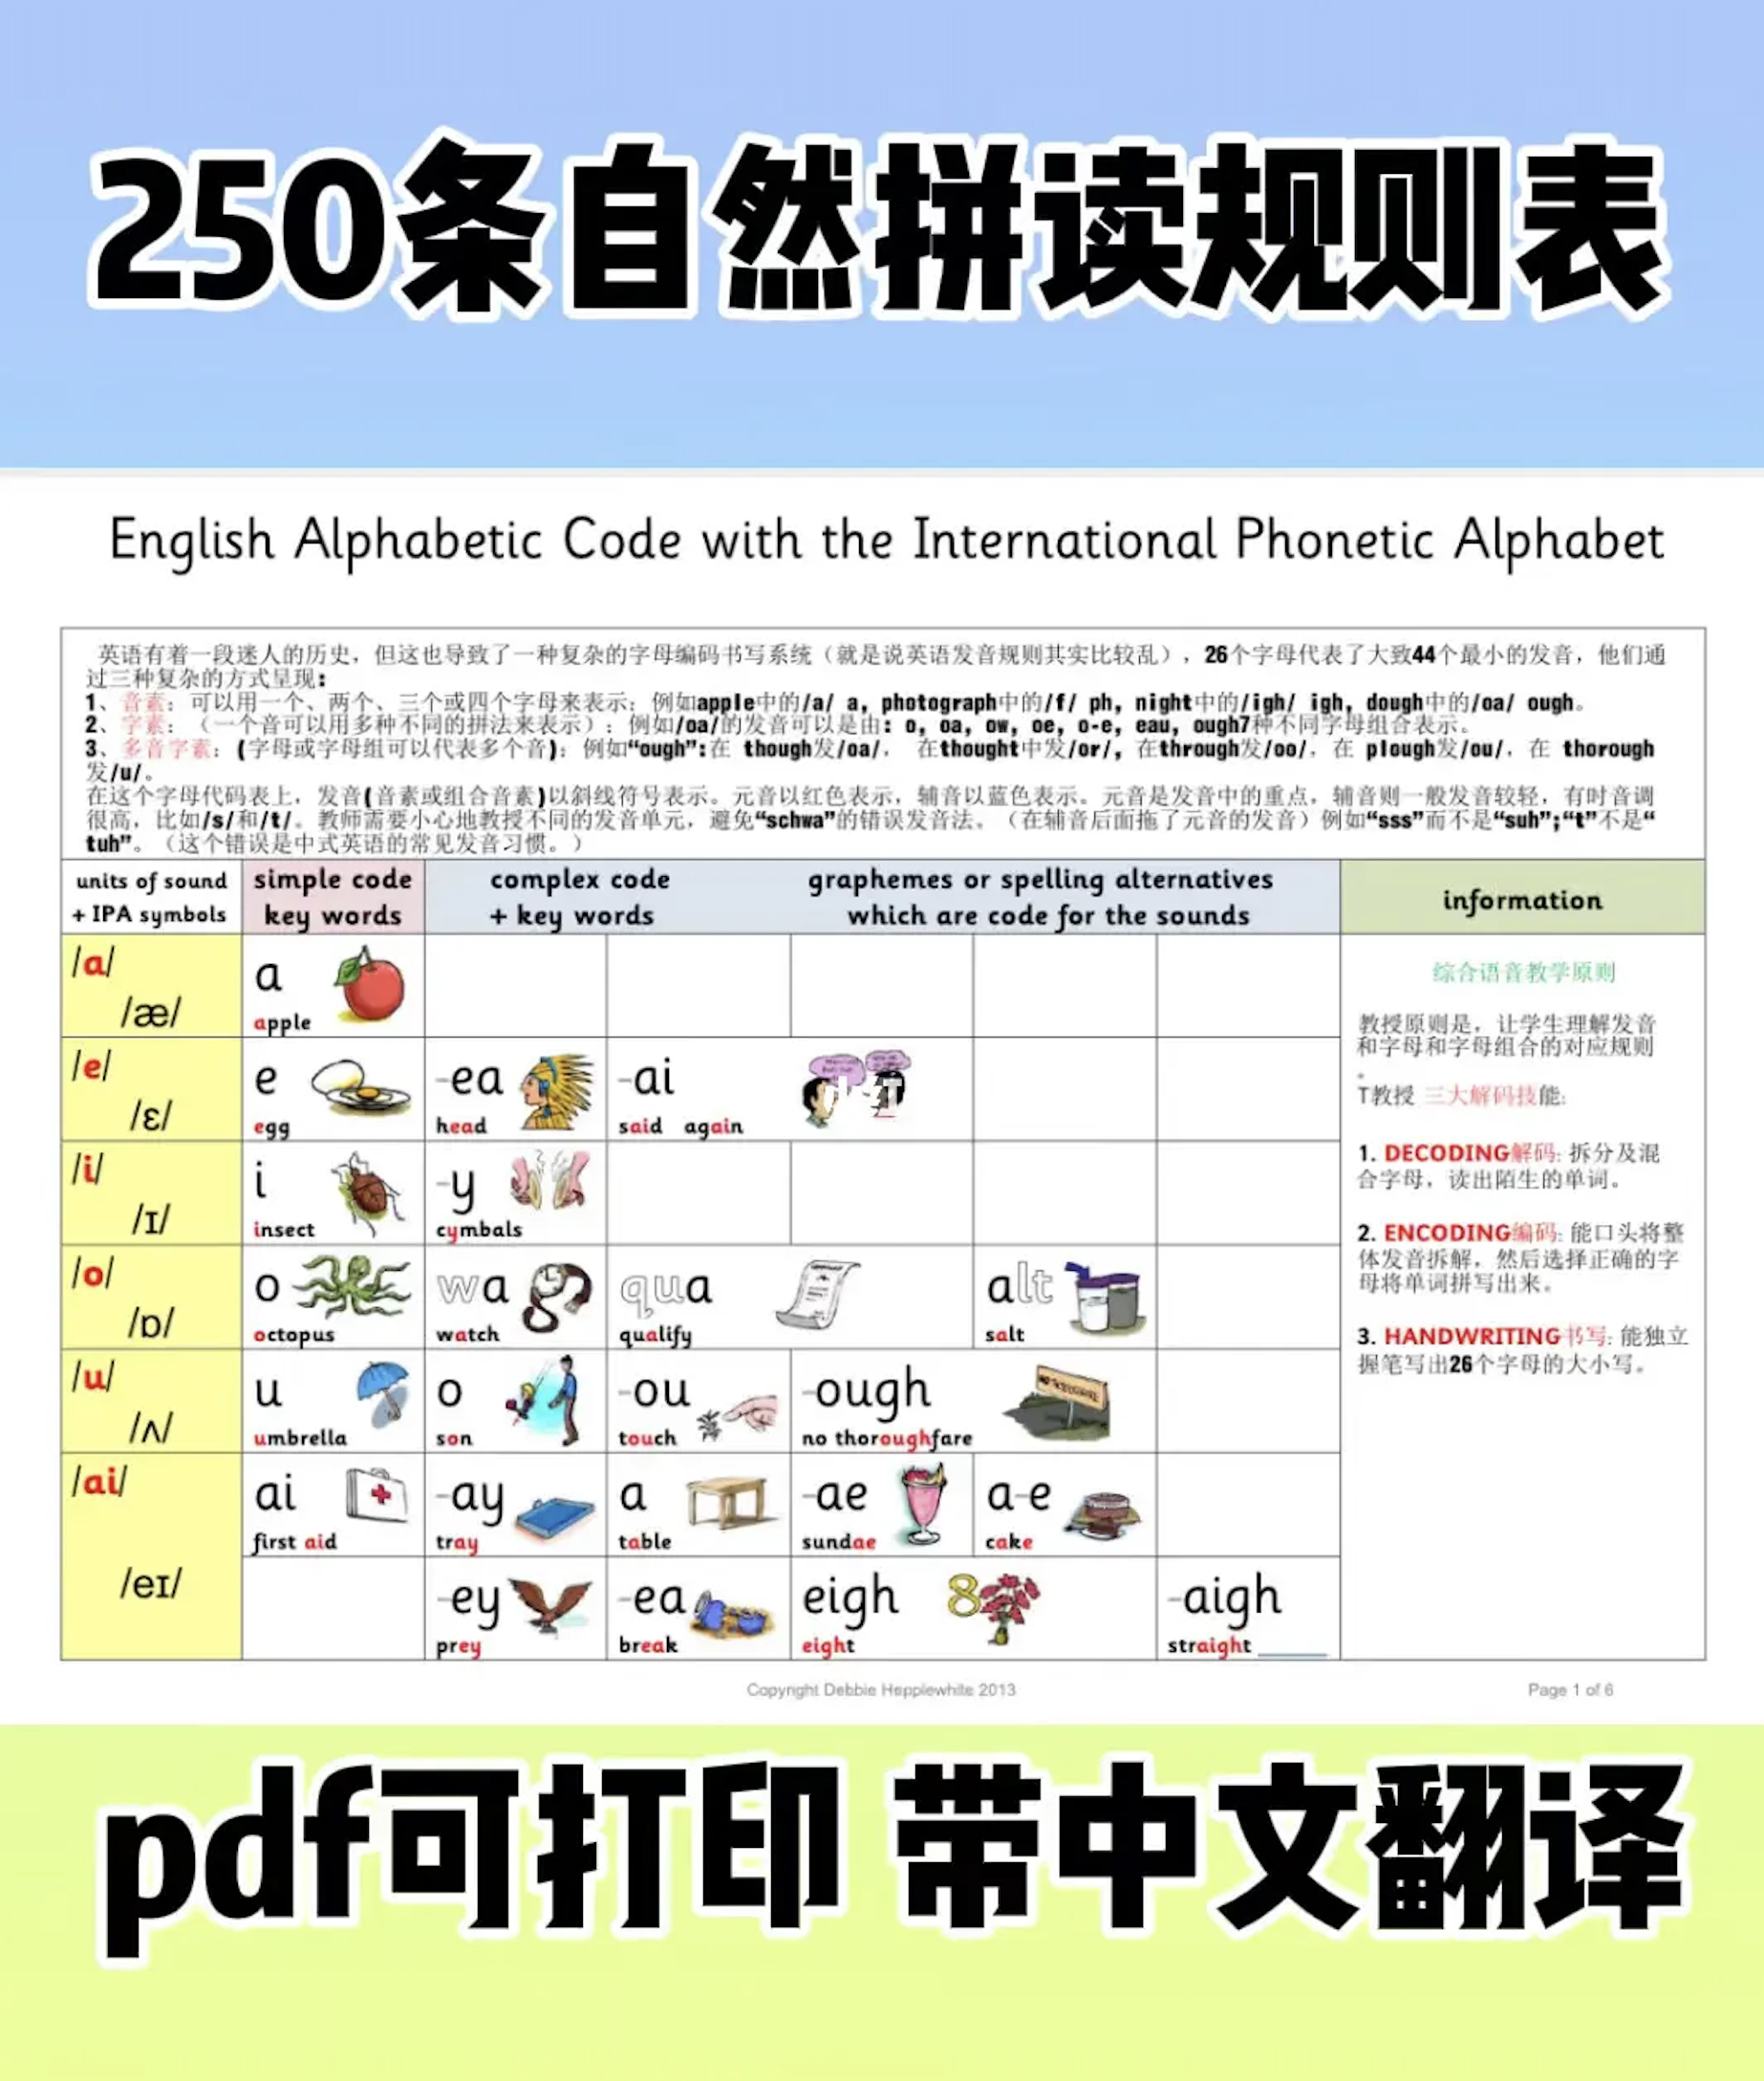 超全的215条英语自然拼读规则(中文版)